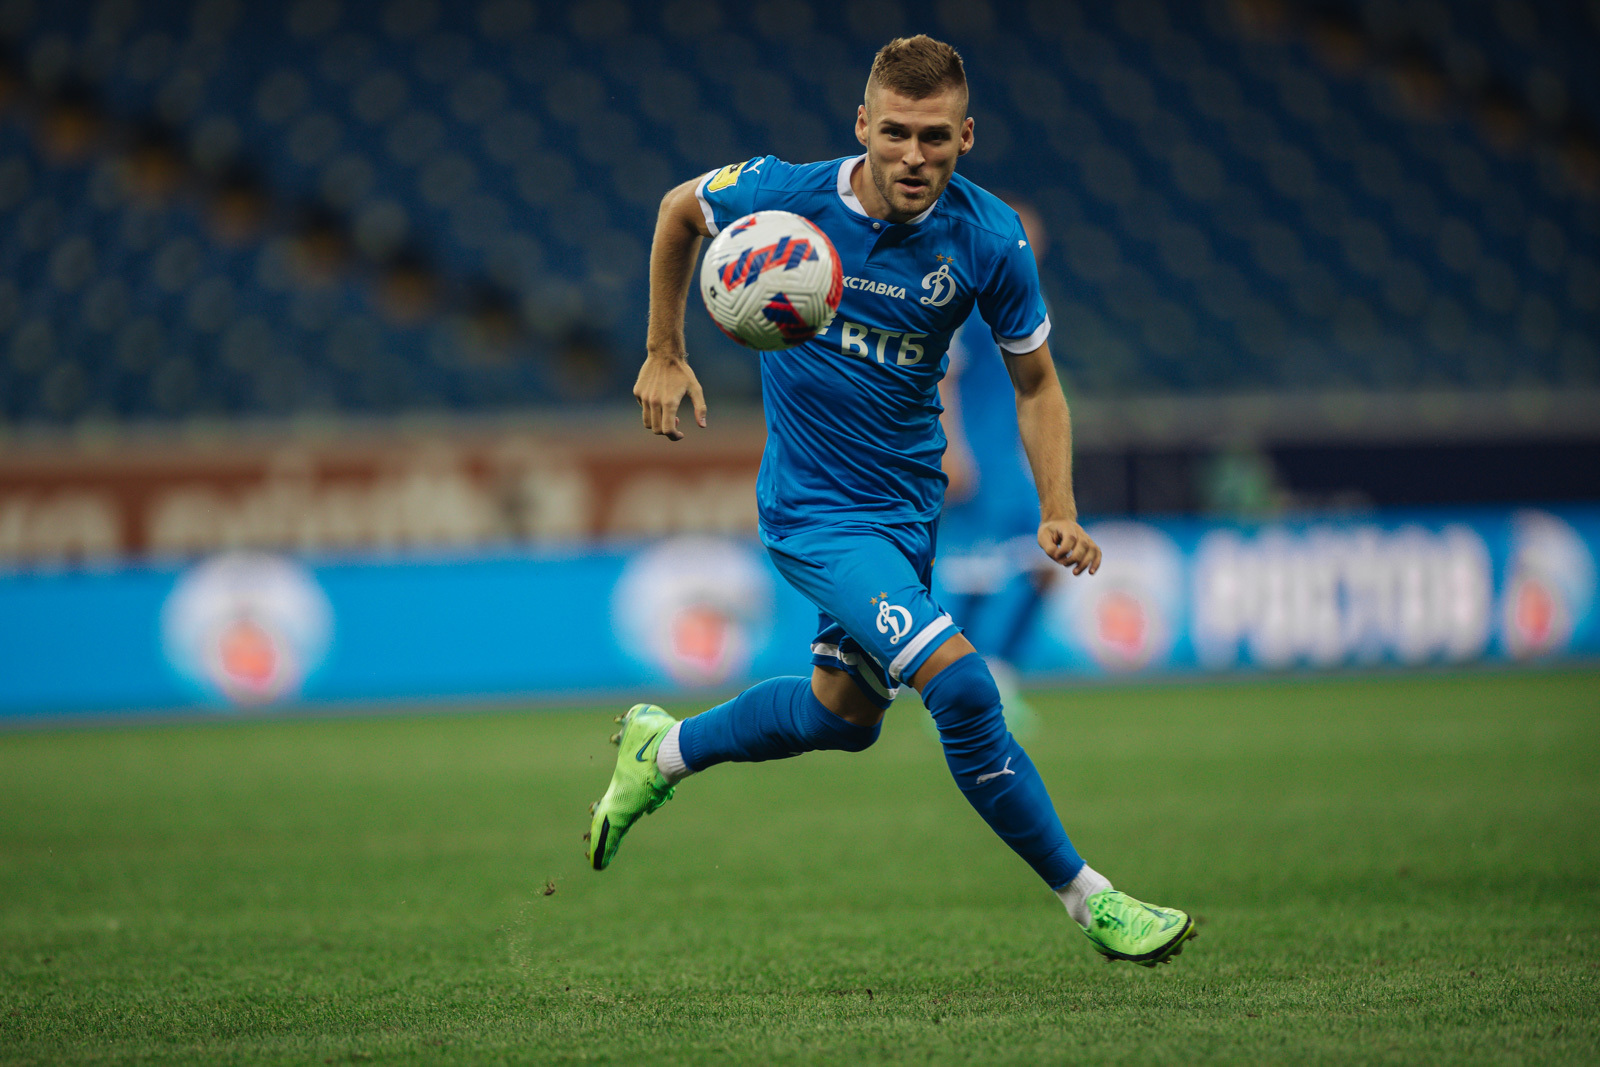 Dmitriy Skopintsev, defensor | FC "DYNAMO" Moscú